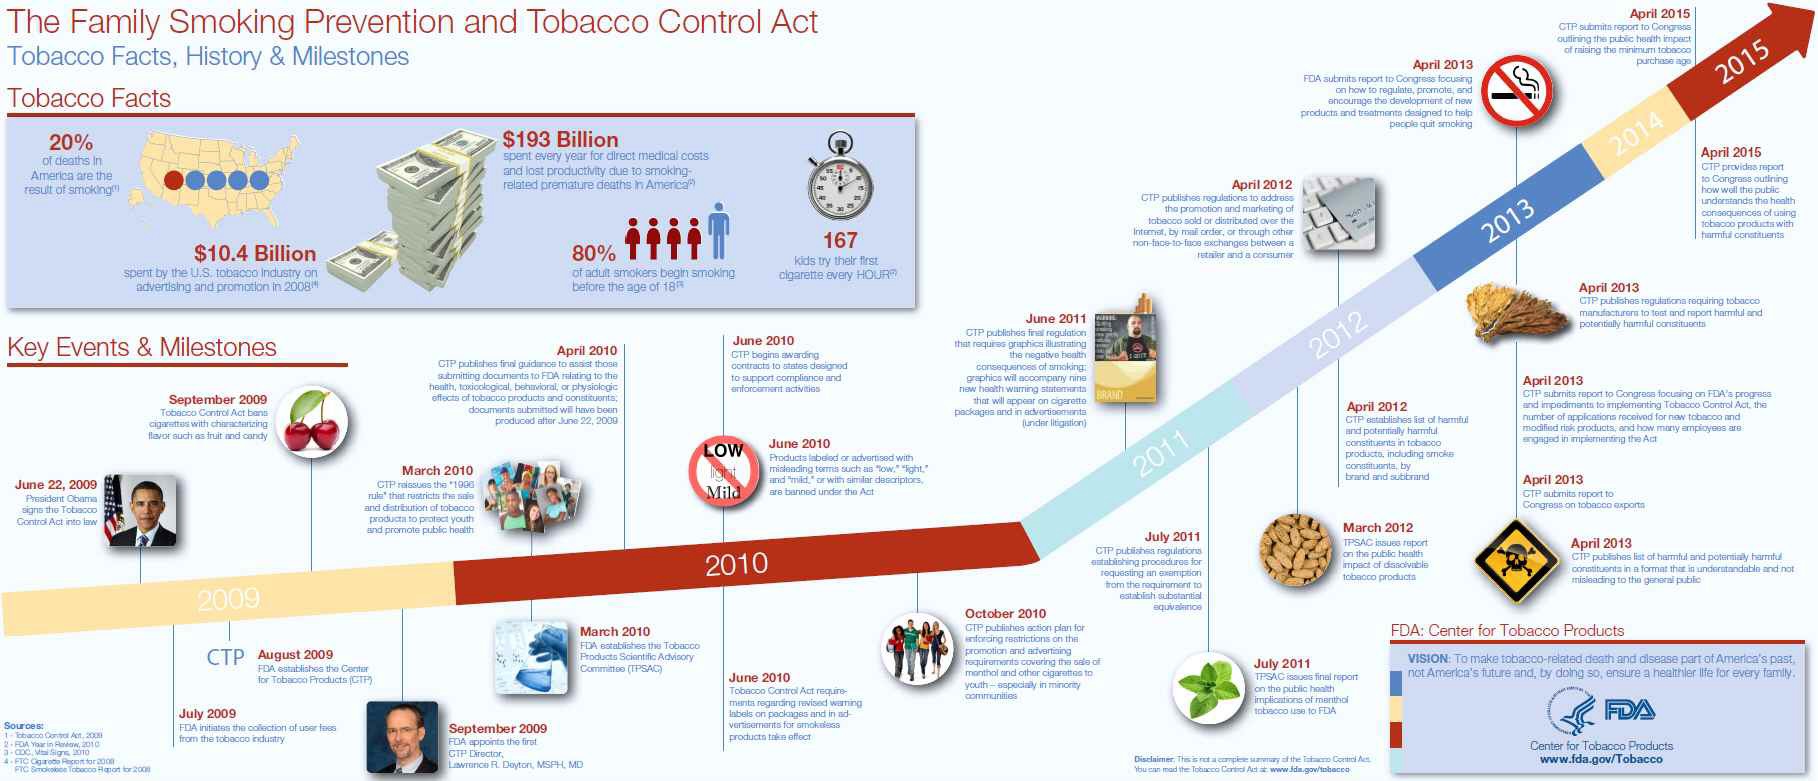 미국 담배규제법 시행 이후의 연혁 및 계획